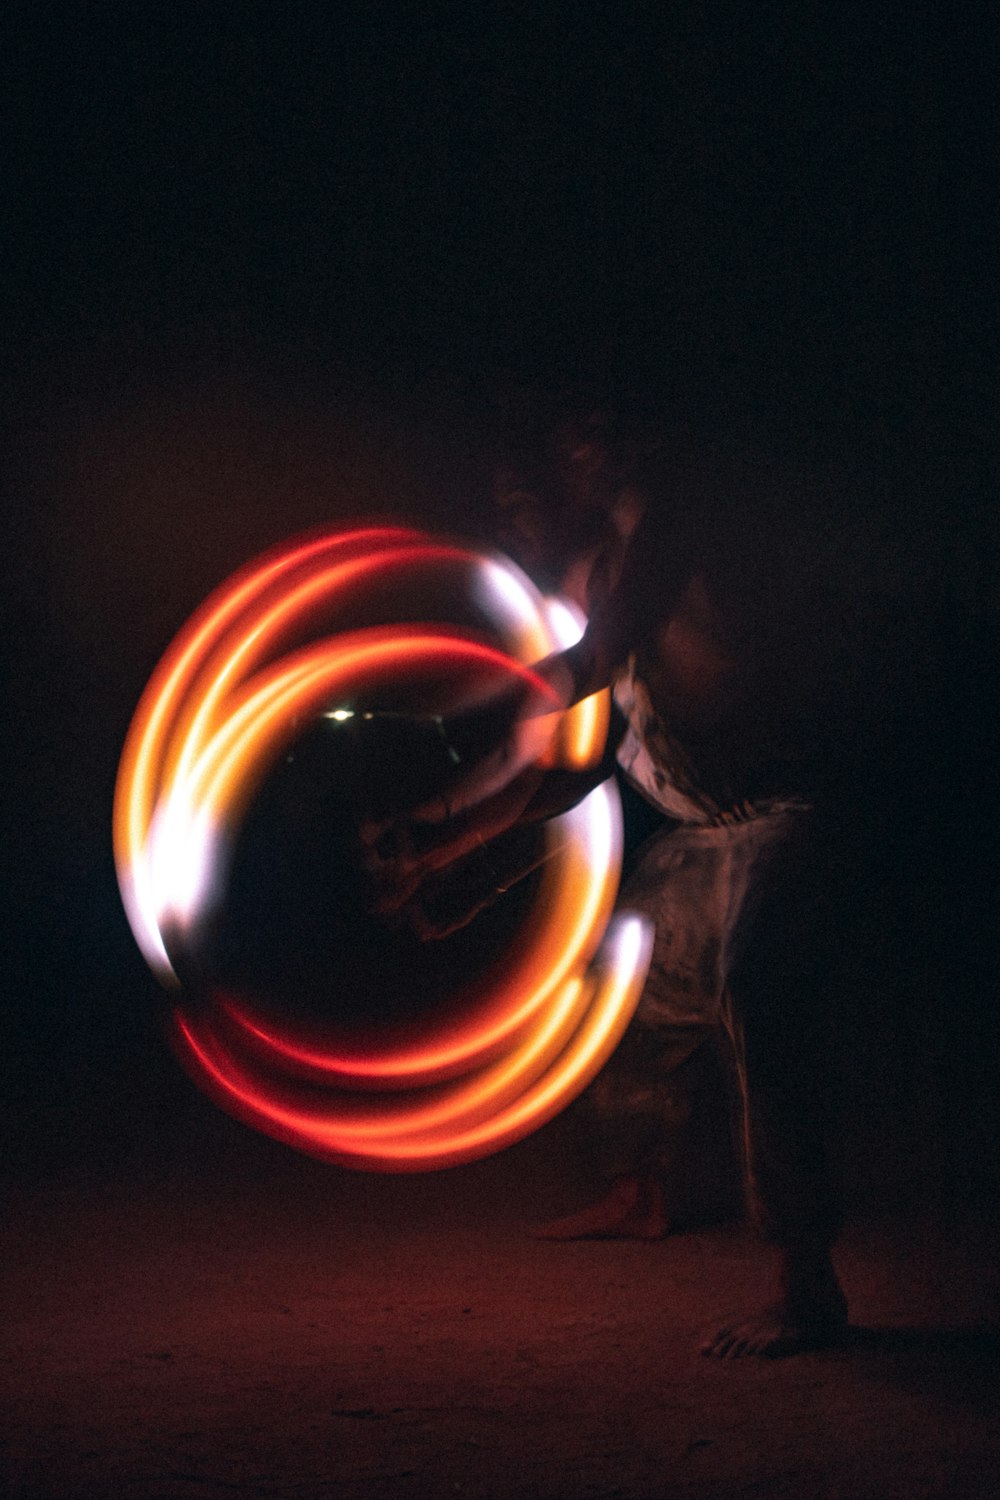 Ein Mann dreht ein kreisförmiges Licht im Dunkeln